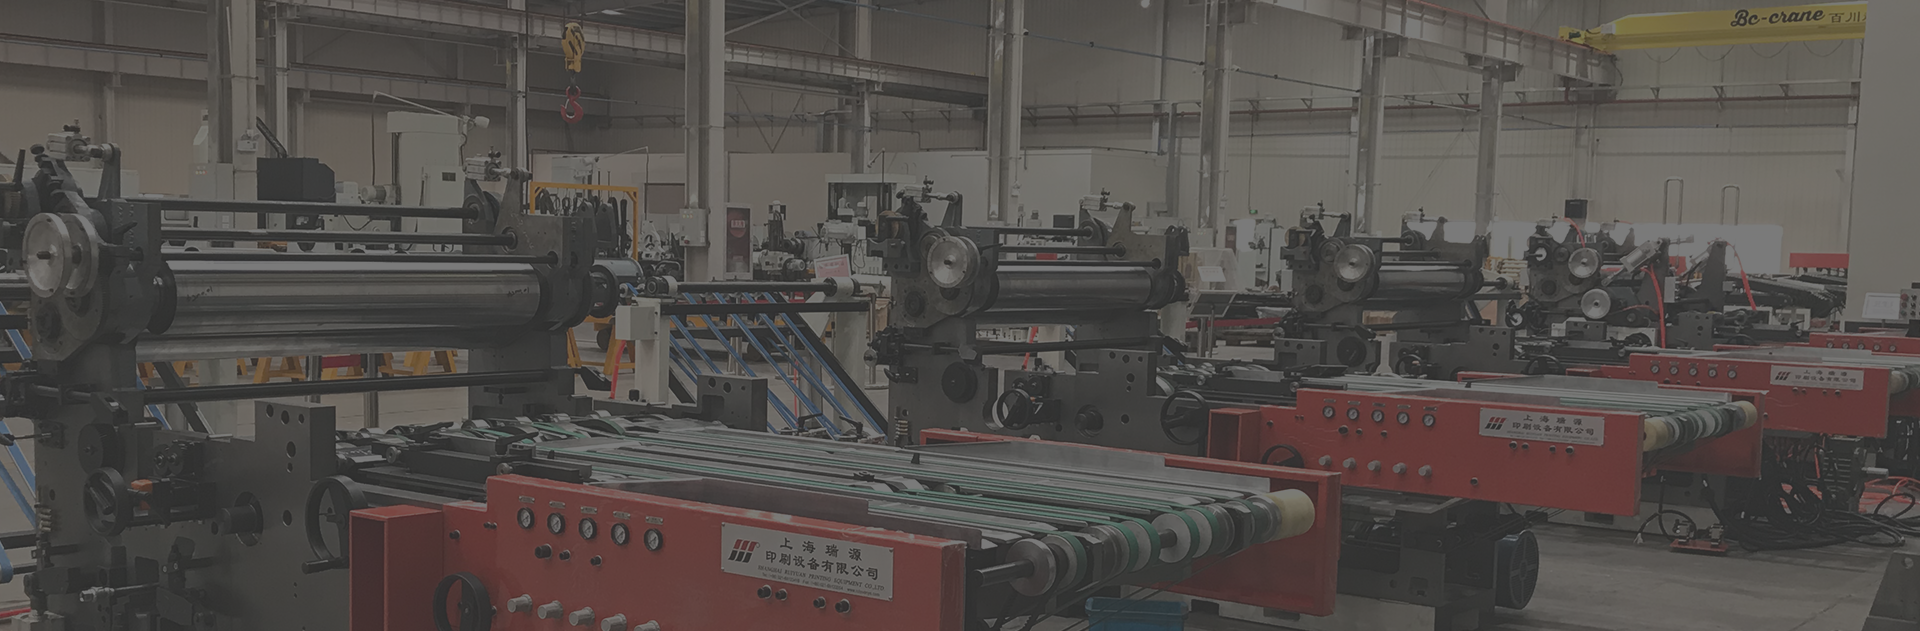 Macchine per stampa e rivestimento in metallo e soluzione di automazione del sistema